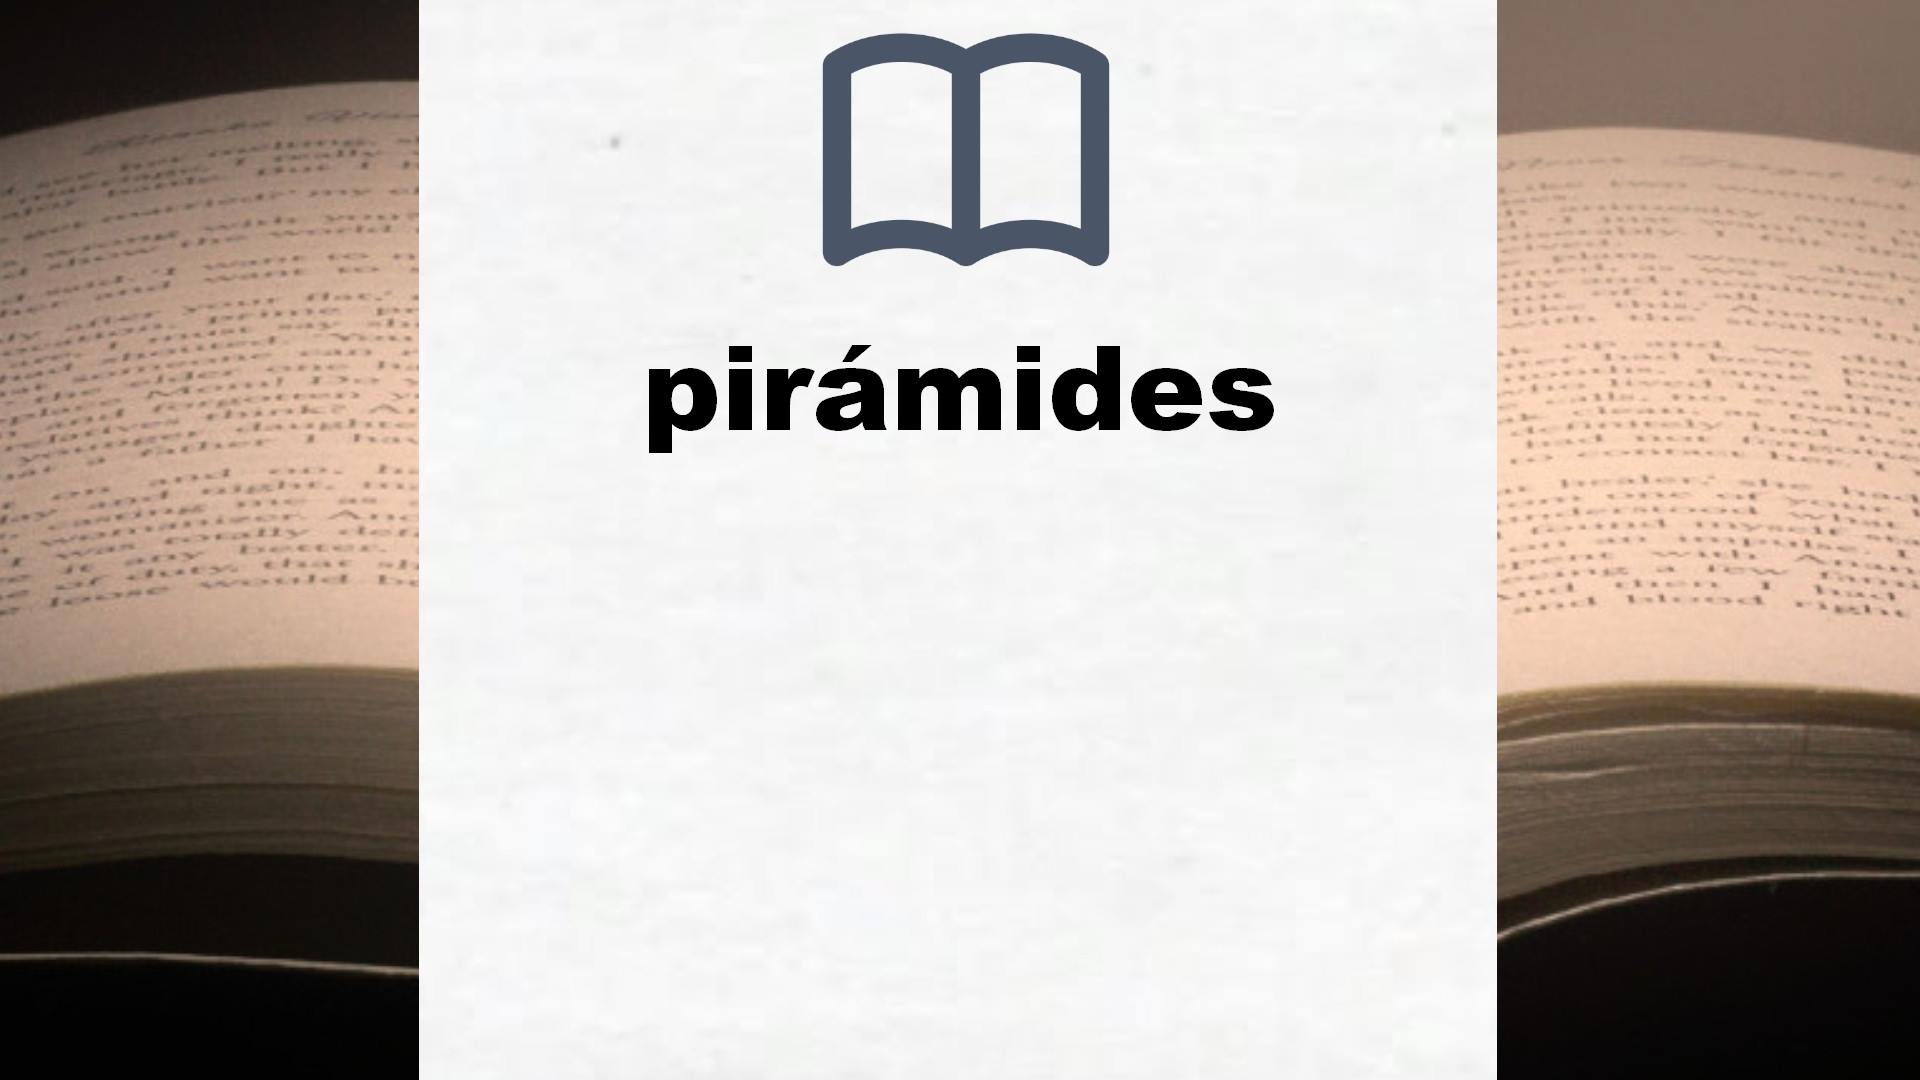 Libros sobre pirámides